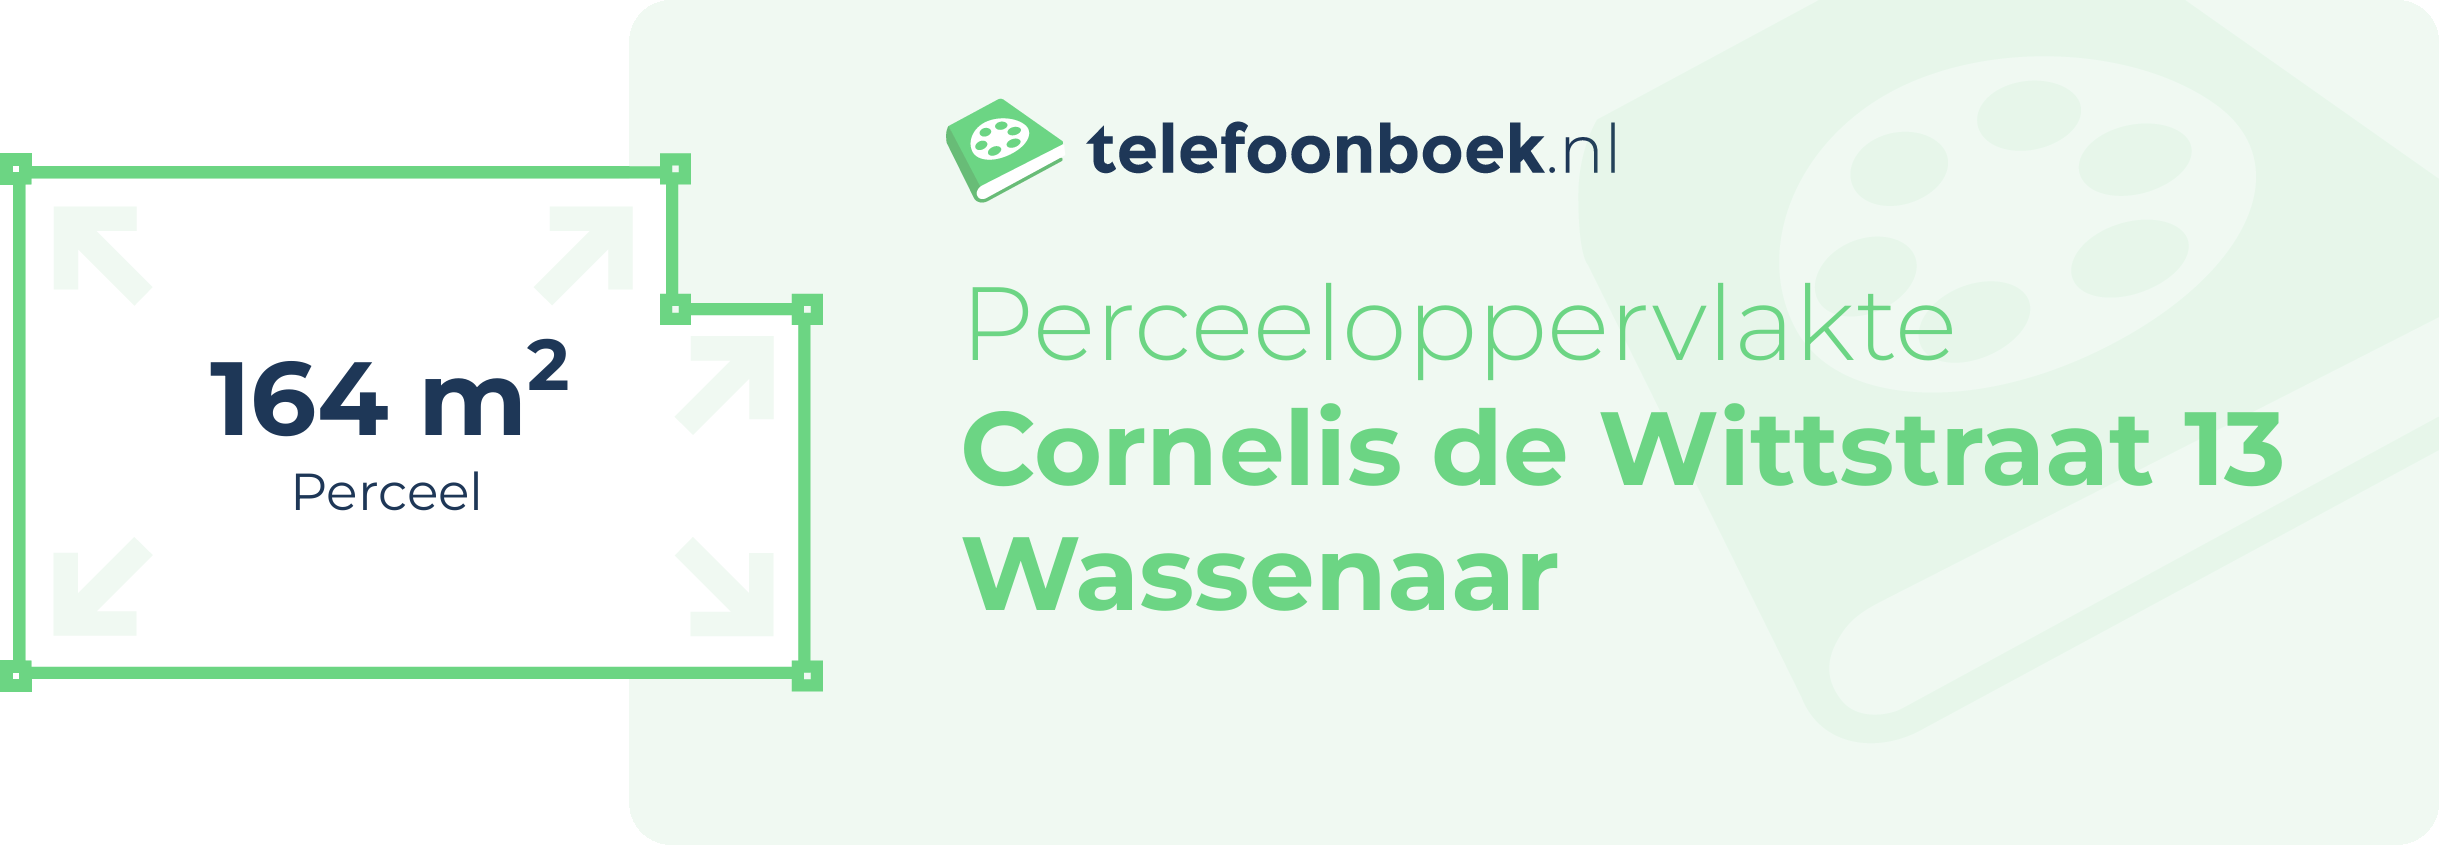 Perceeloppervlakte Cornelis De Wittstraat 13 Wassenaar